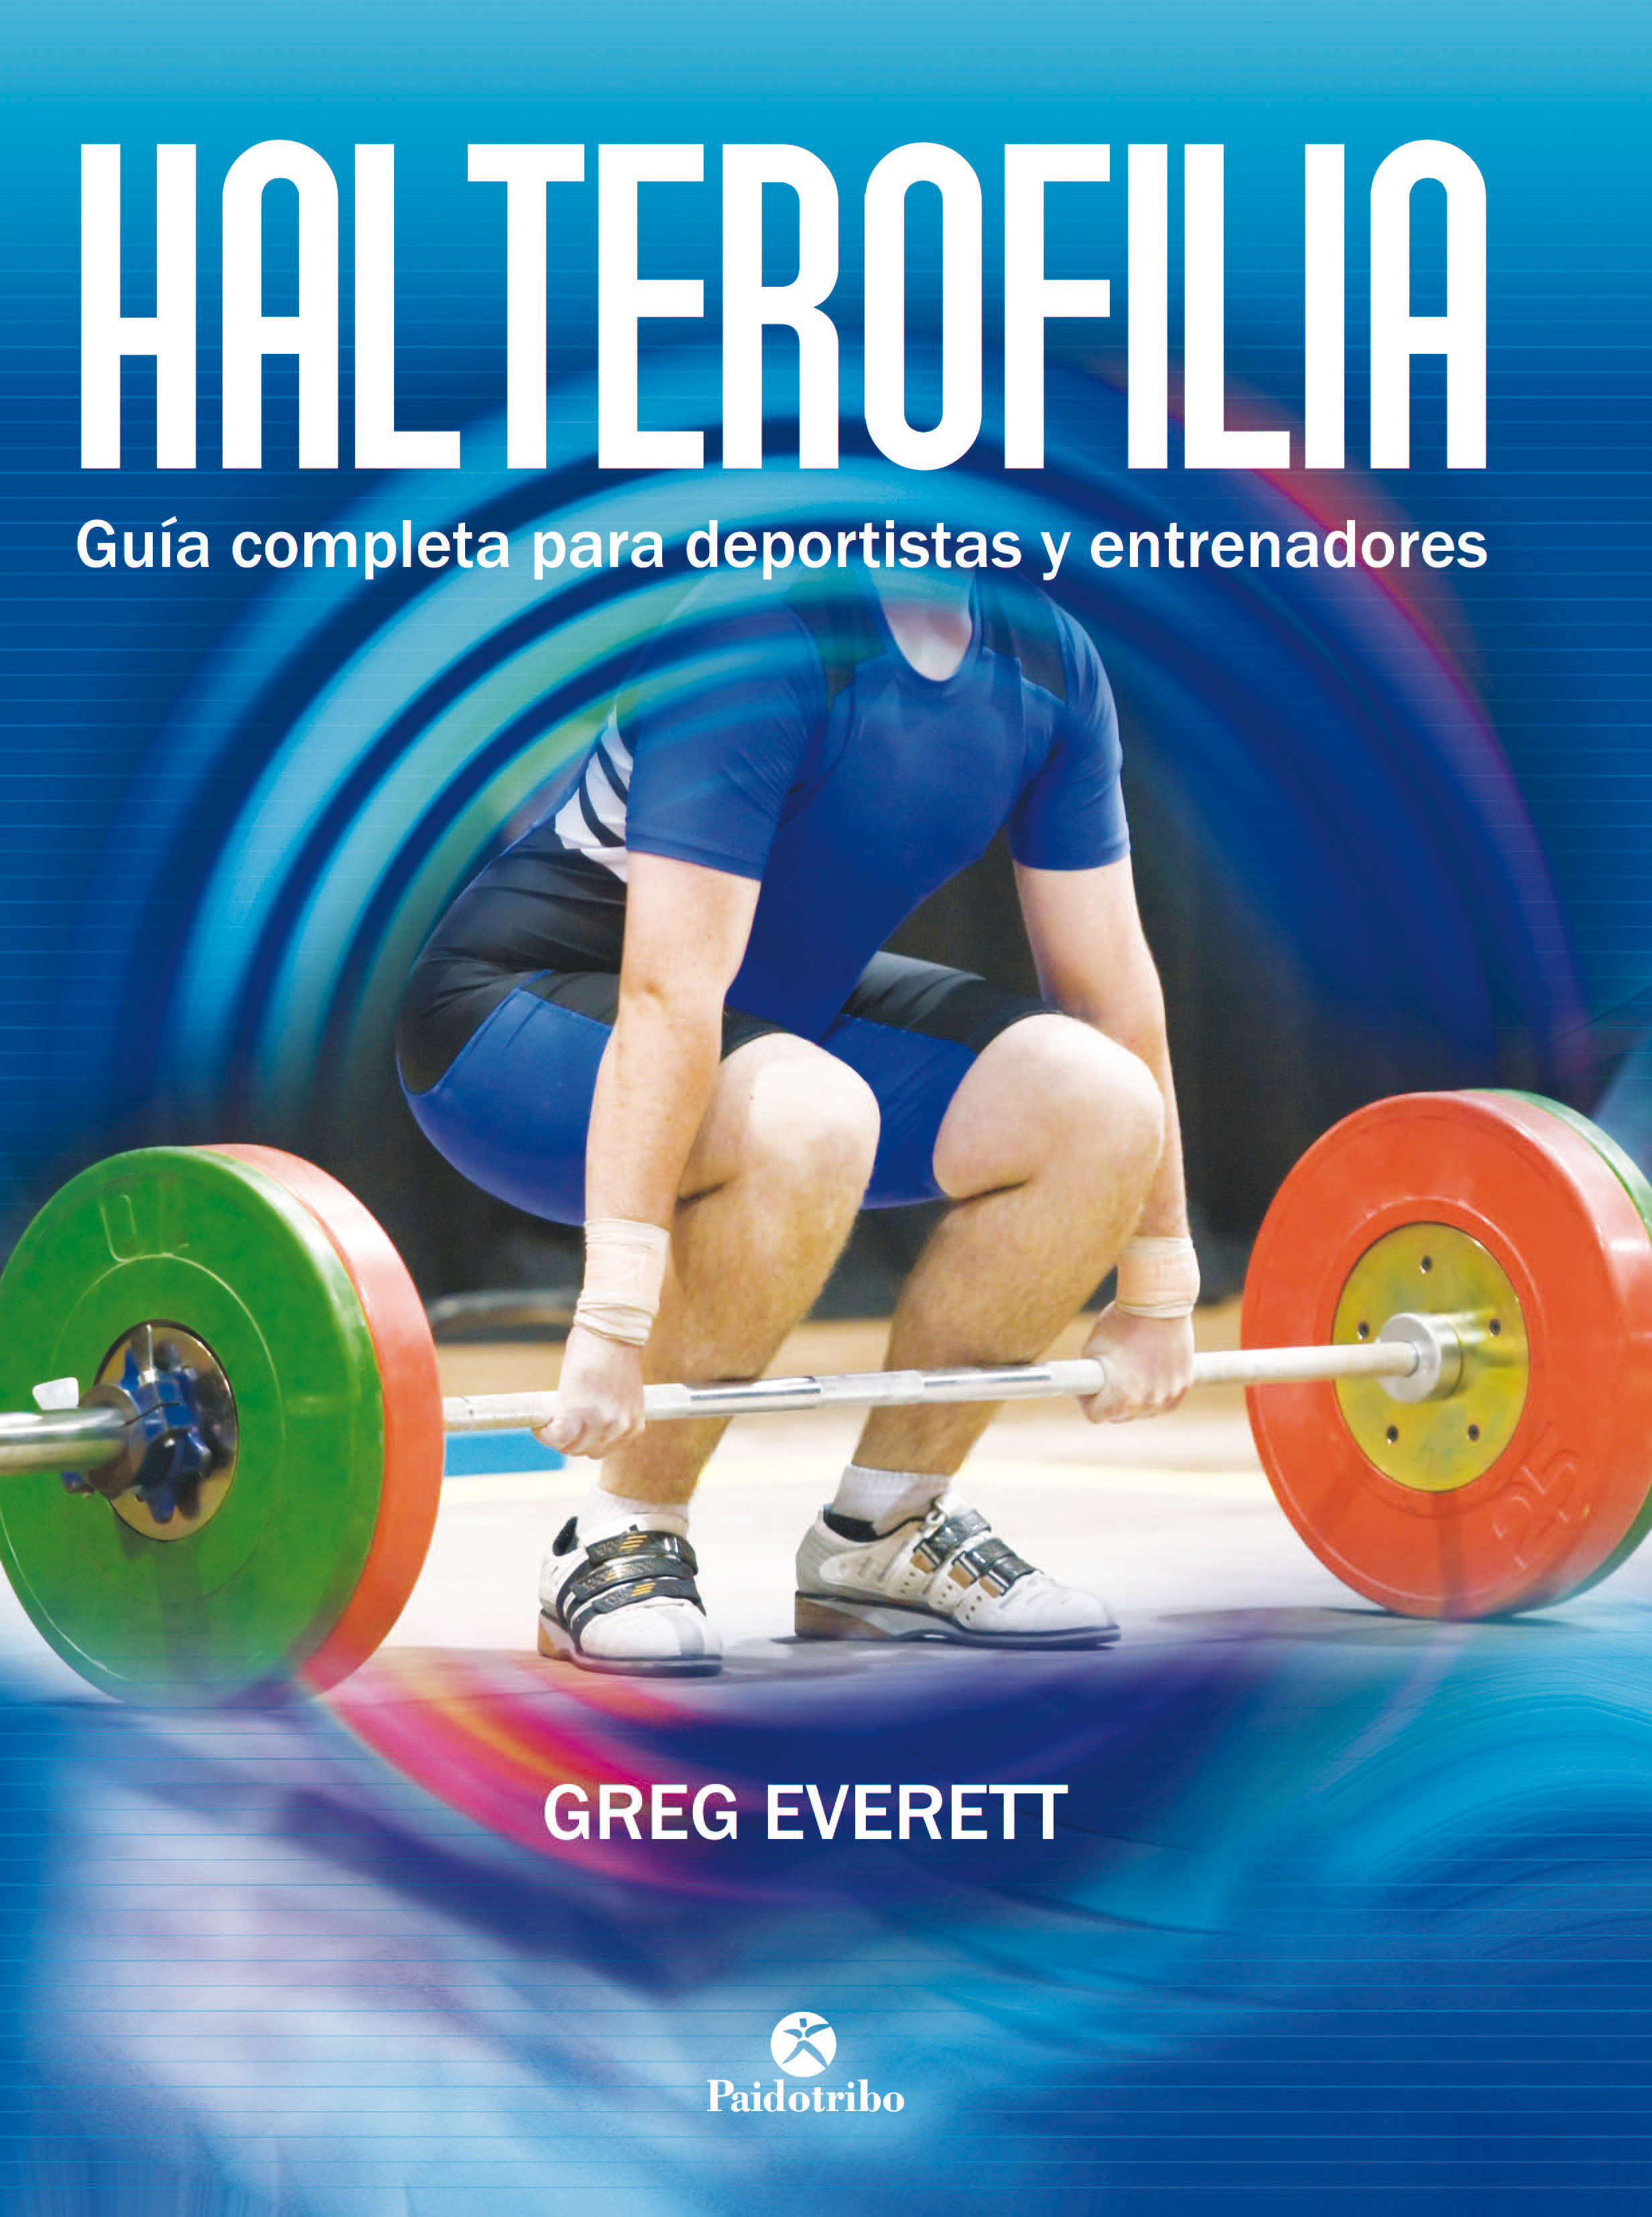 Halterofilia. Guía completa para deportistas y entrenadores (9788499105642)